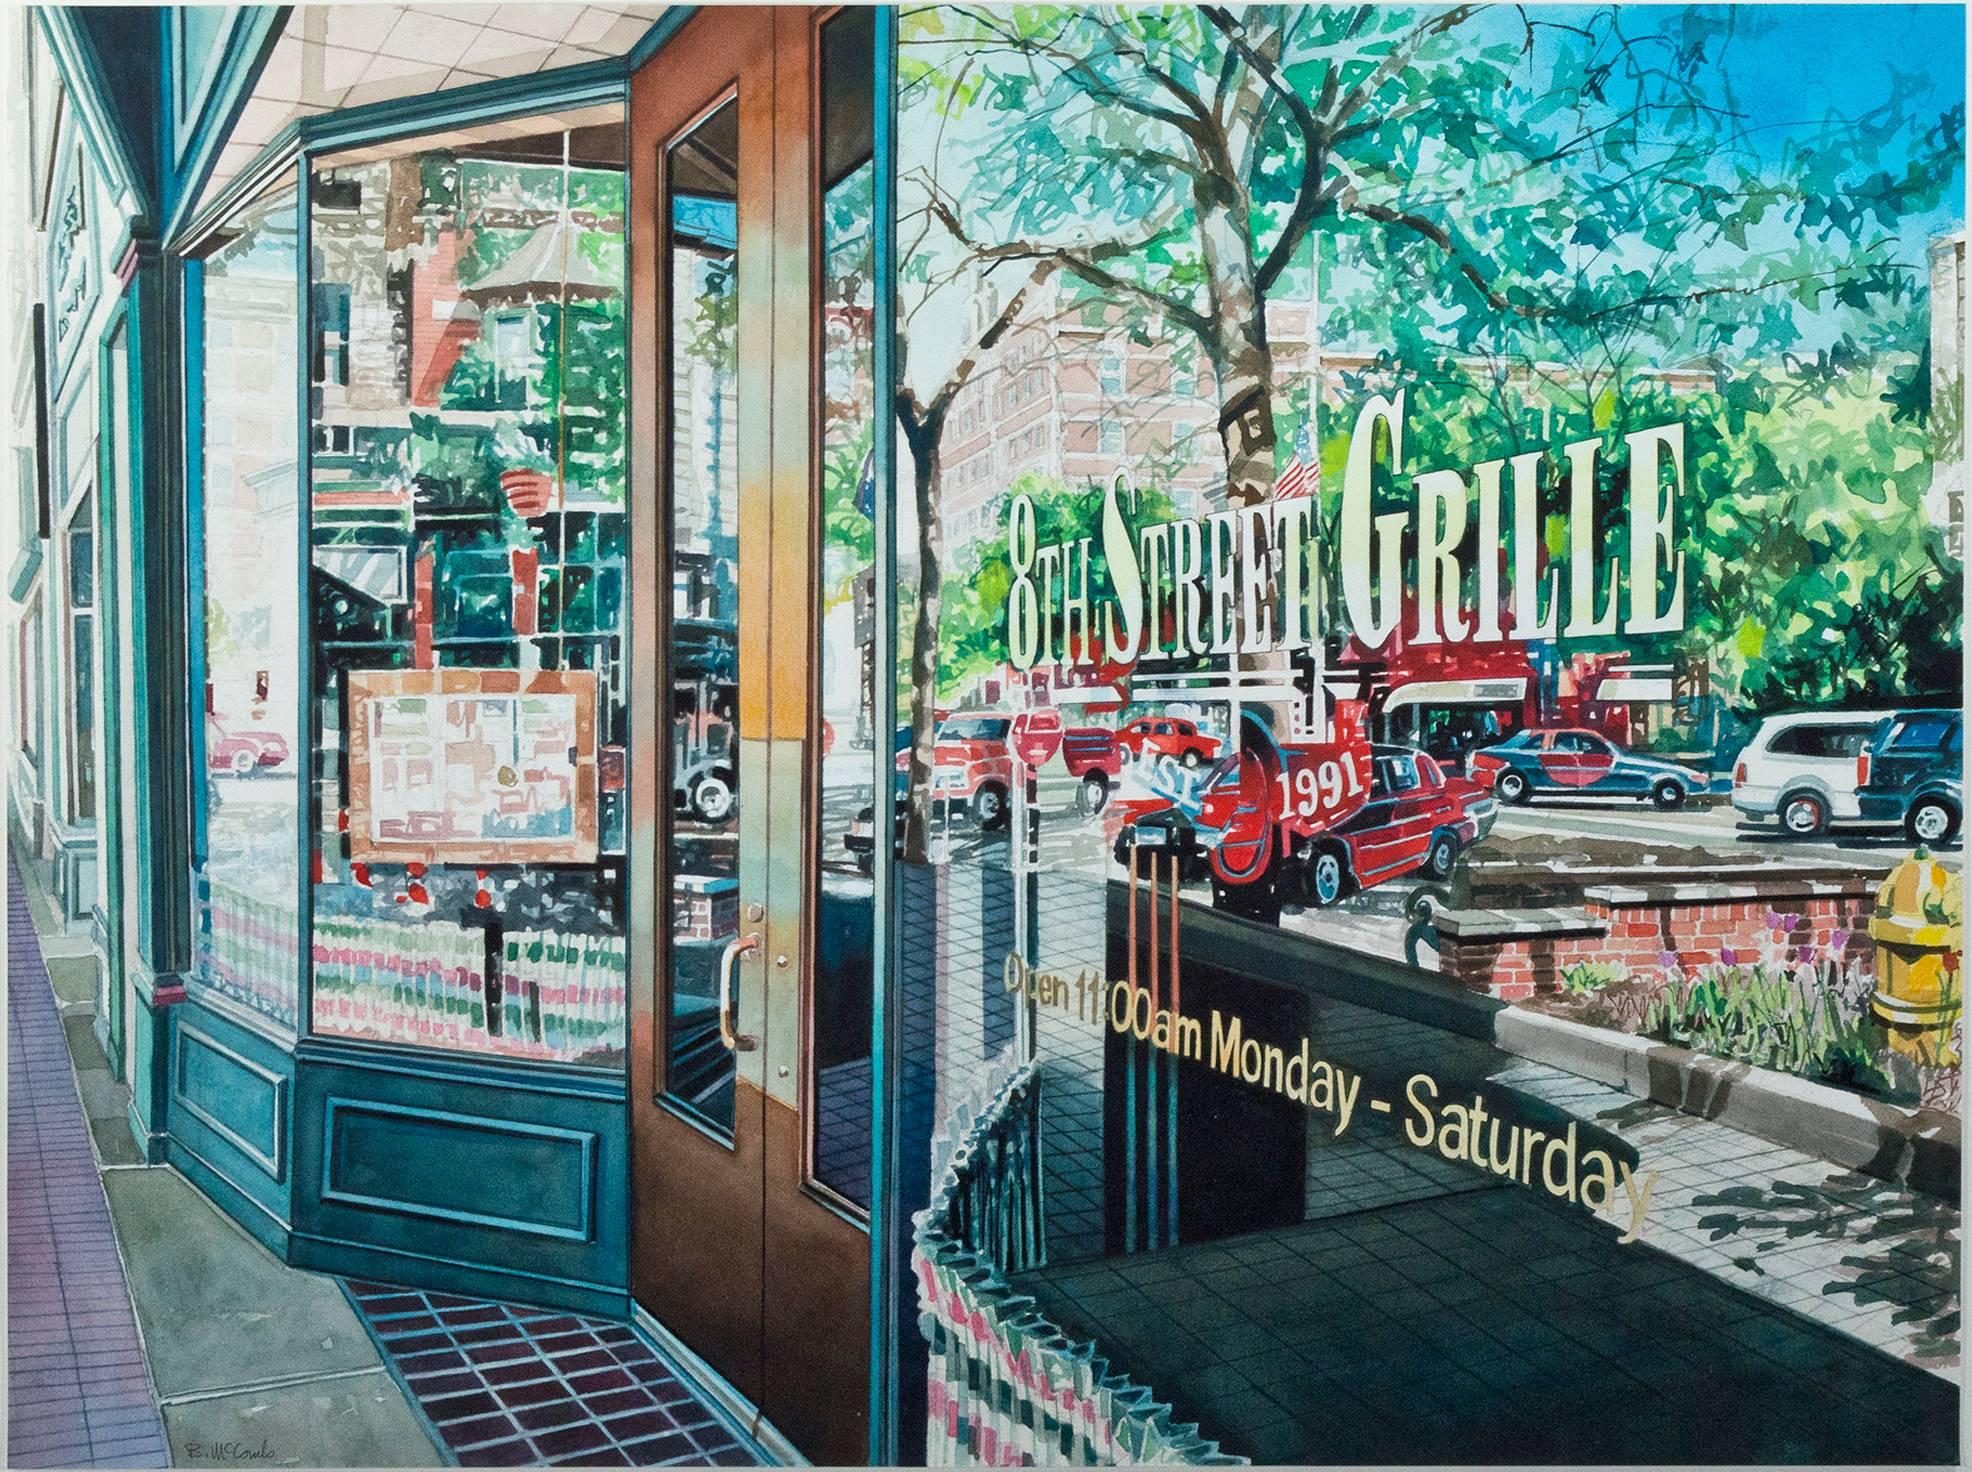 "Reflections 8th Street Grille" ist ein signiertes Original-Aquarell von Bruce McCombs. Es stellt das Schaufenster eines Cafés dar. Bei dieser Ansicht sieht der Betrachter nicht viel von den Innenräumen, sondern nur die hell erleuchtete Straße im